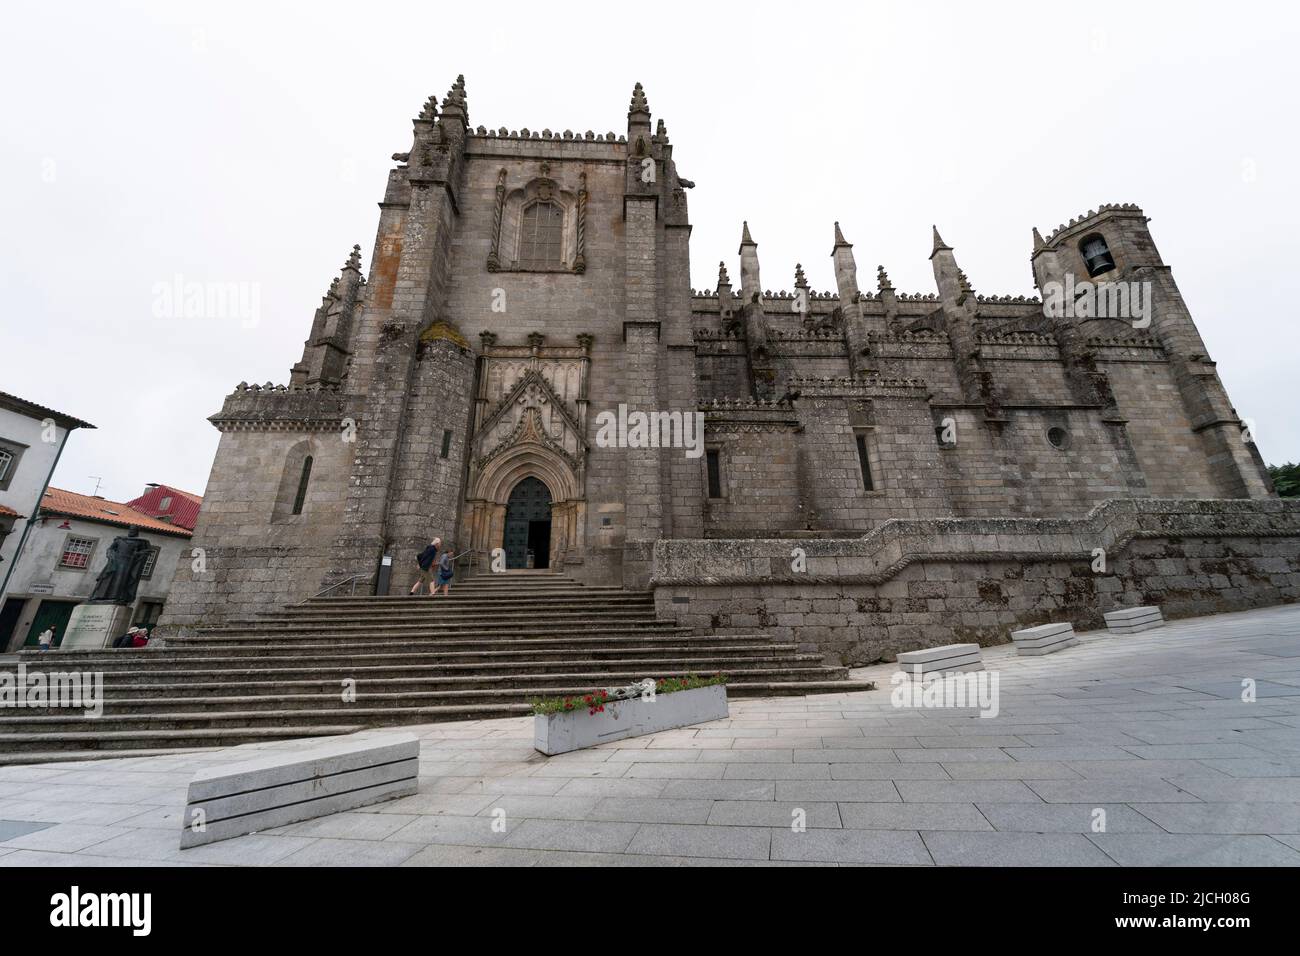 Cathedral of Guarda - Sé Catedral da Guarda, Portugal, Europe Stock Photo